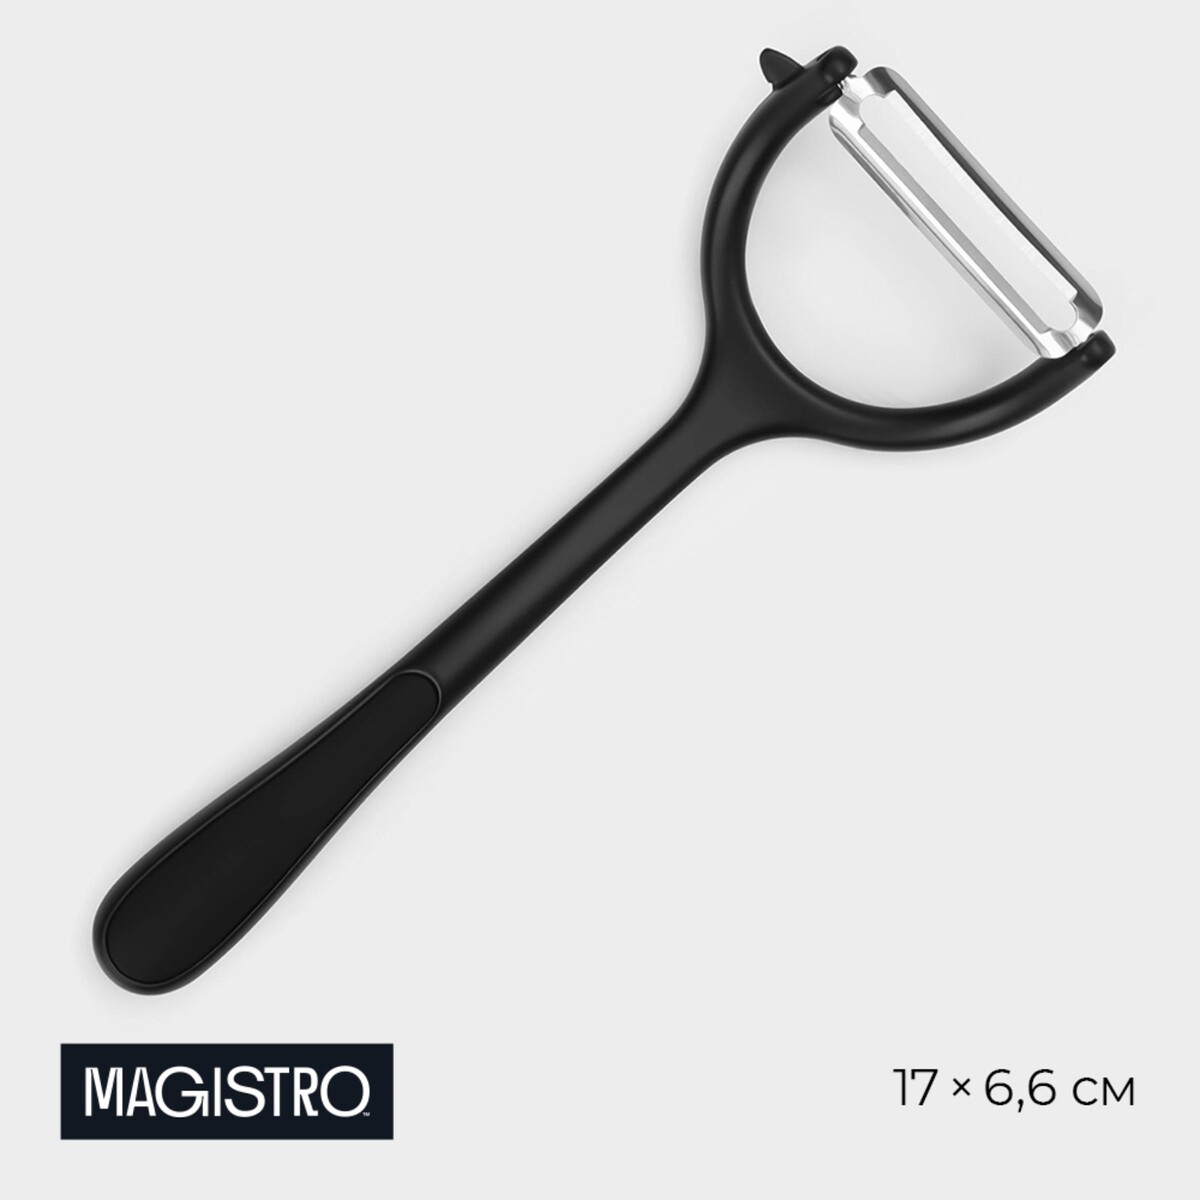 Овощечистка magistro vantablack, 17×6,6 см, горизонтальная, цвет черный